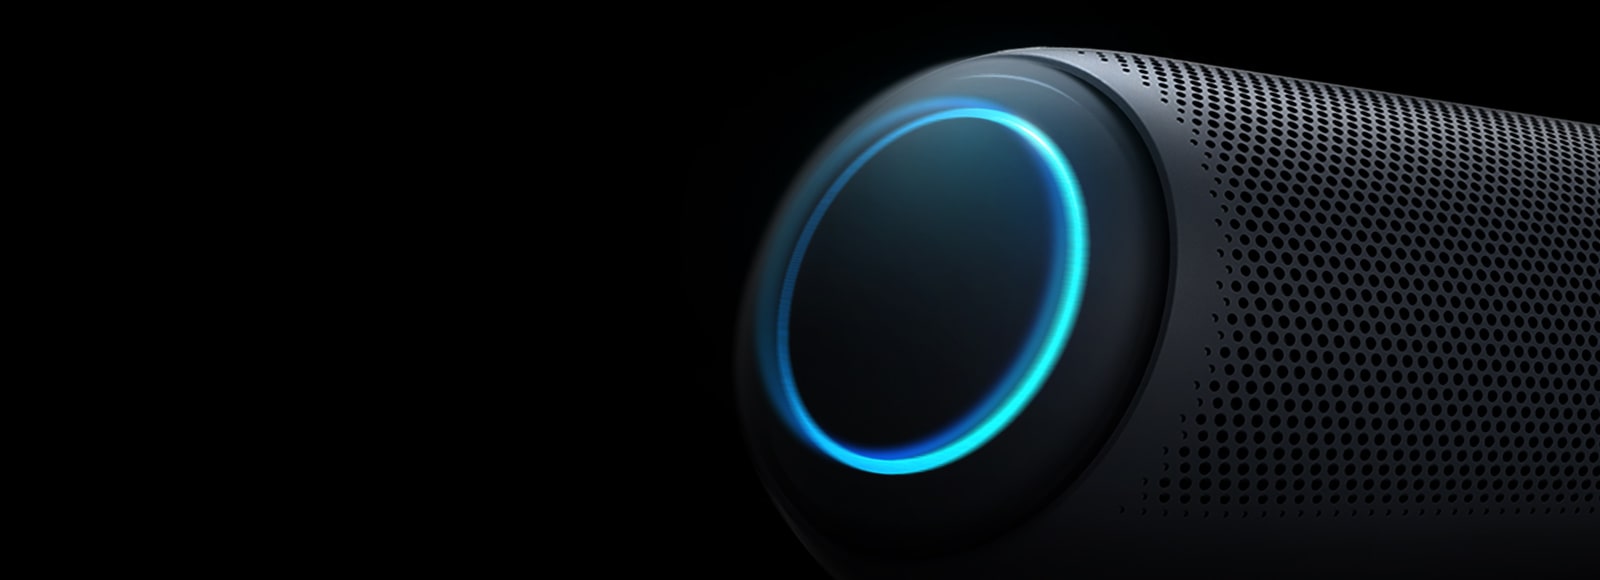 Em um fundo preto, há um close-up do woofer esquerdo do LG XBOOM Go com iluminação azul-celeste.